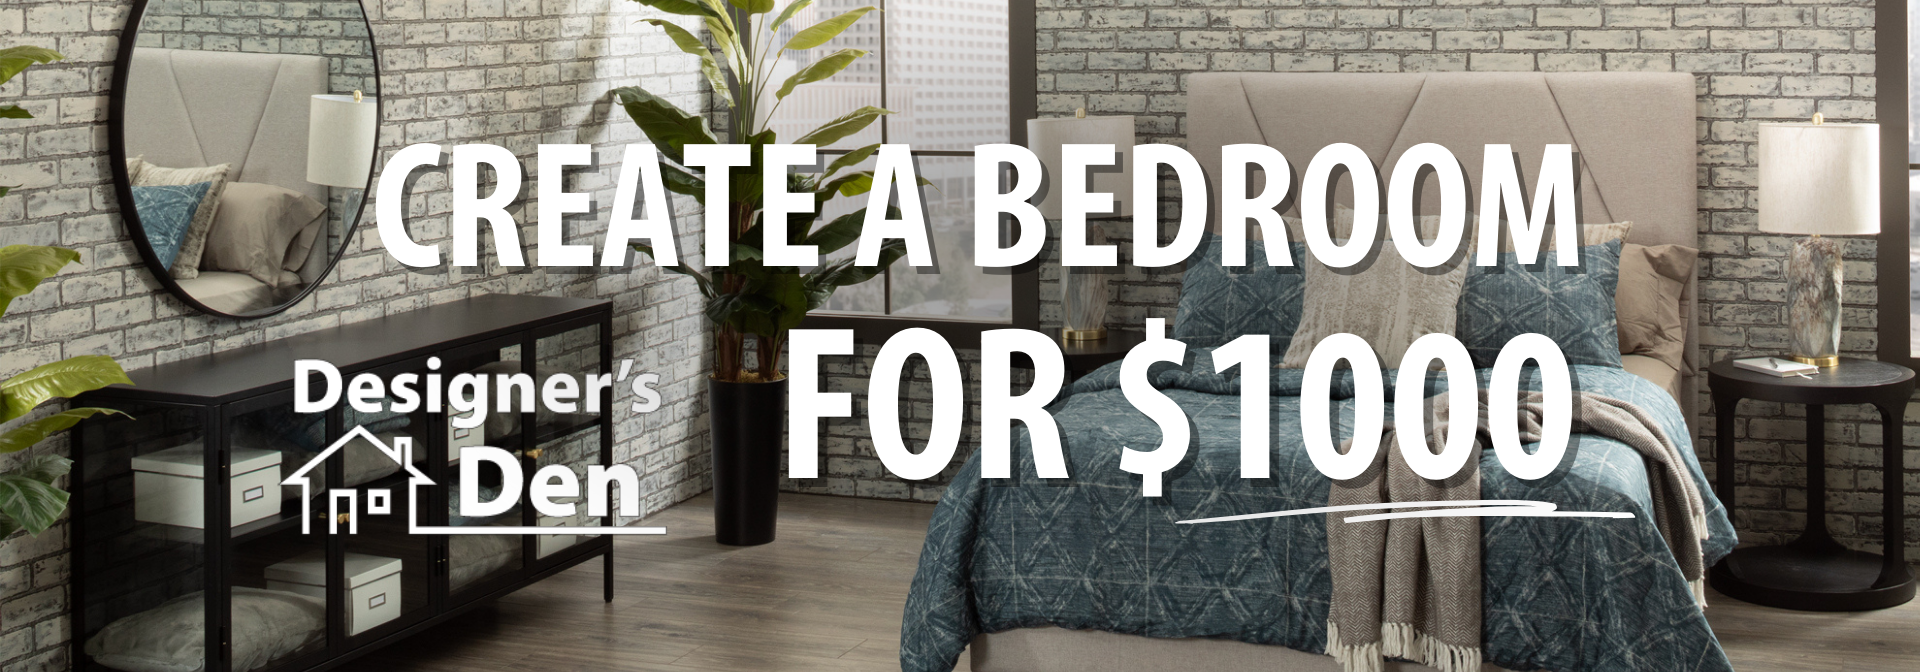 Designer's Den | Create a Bedroom for $1000